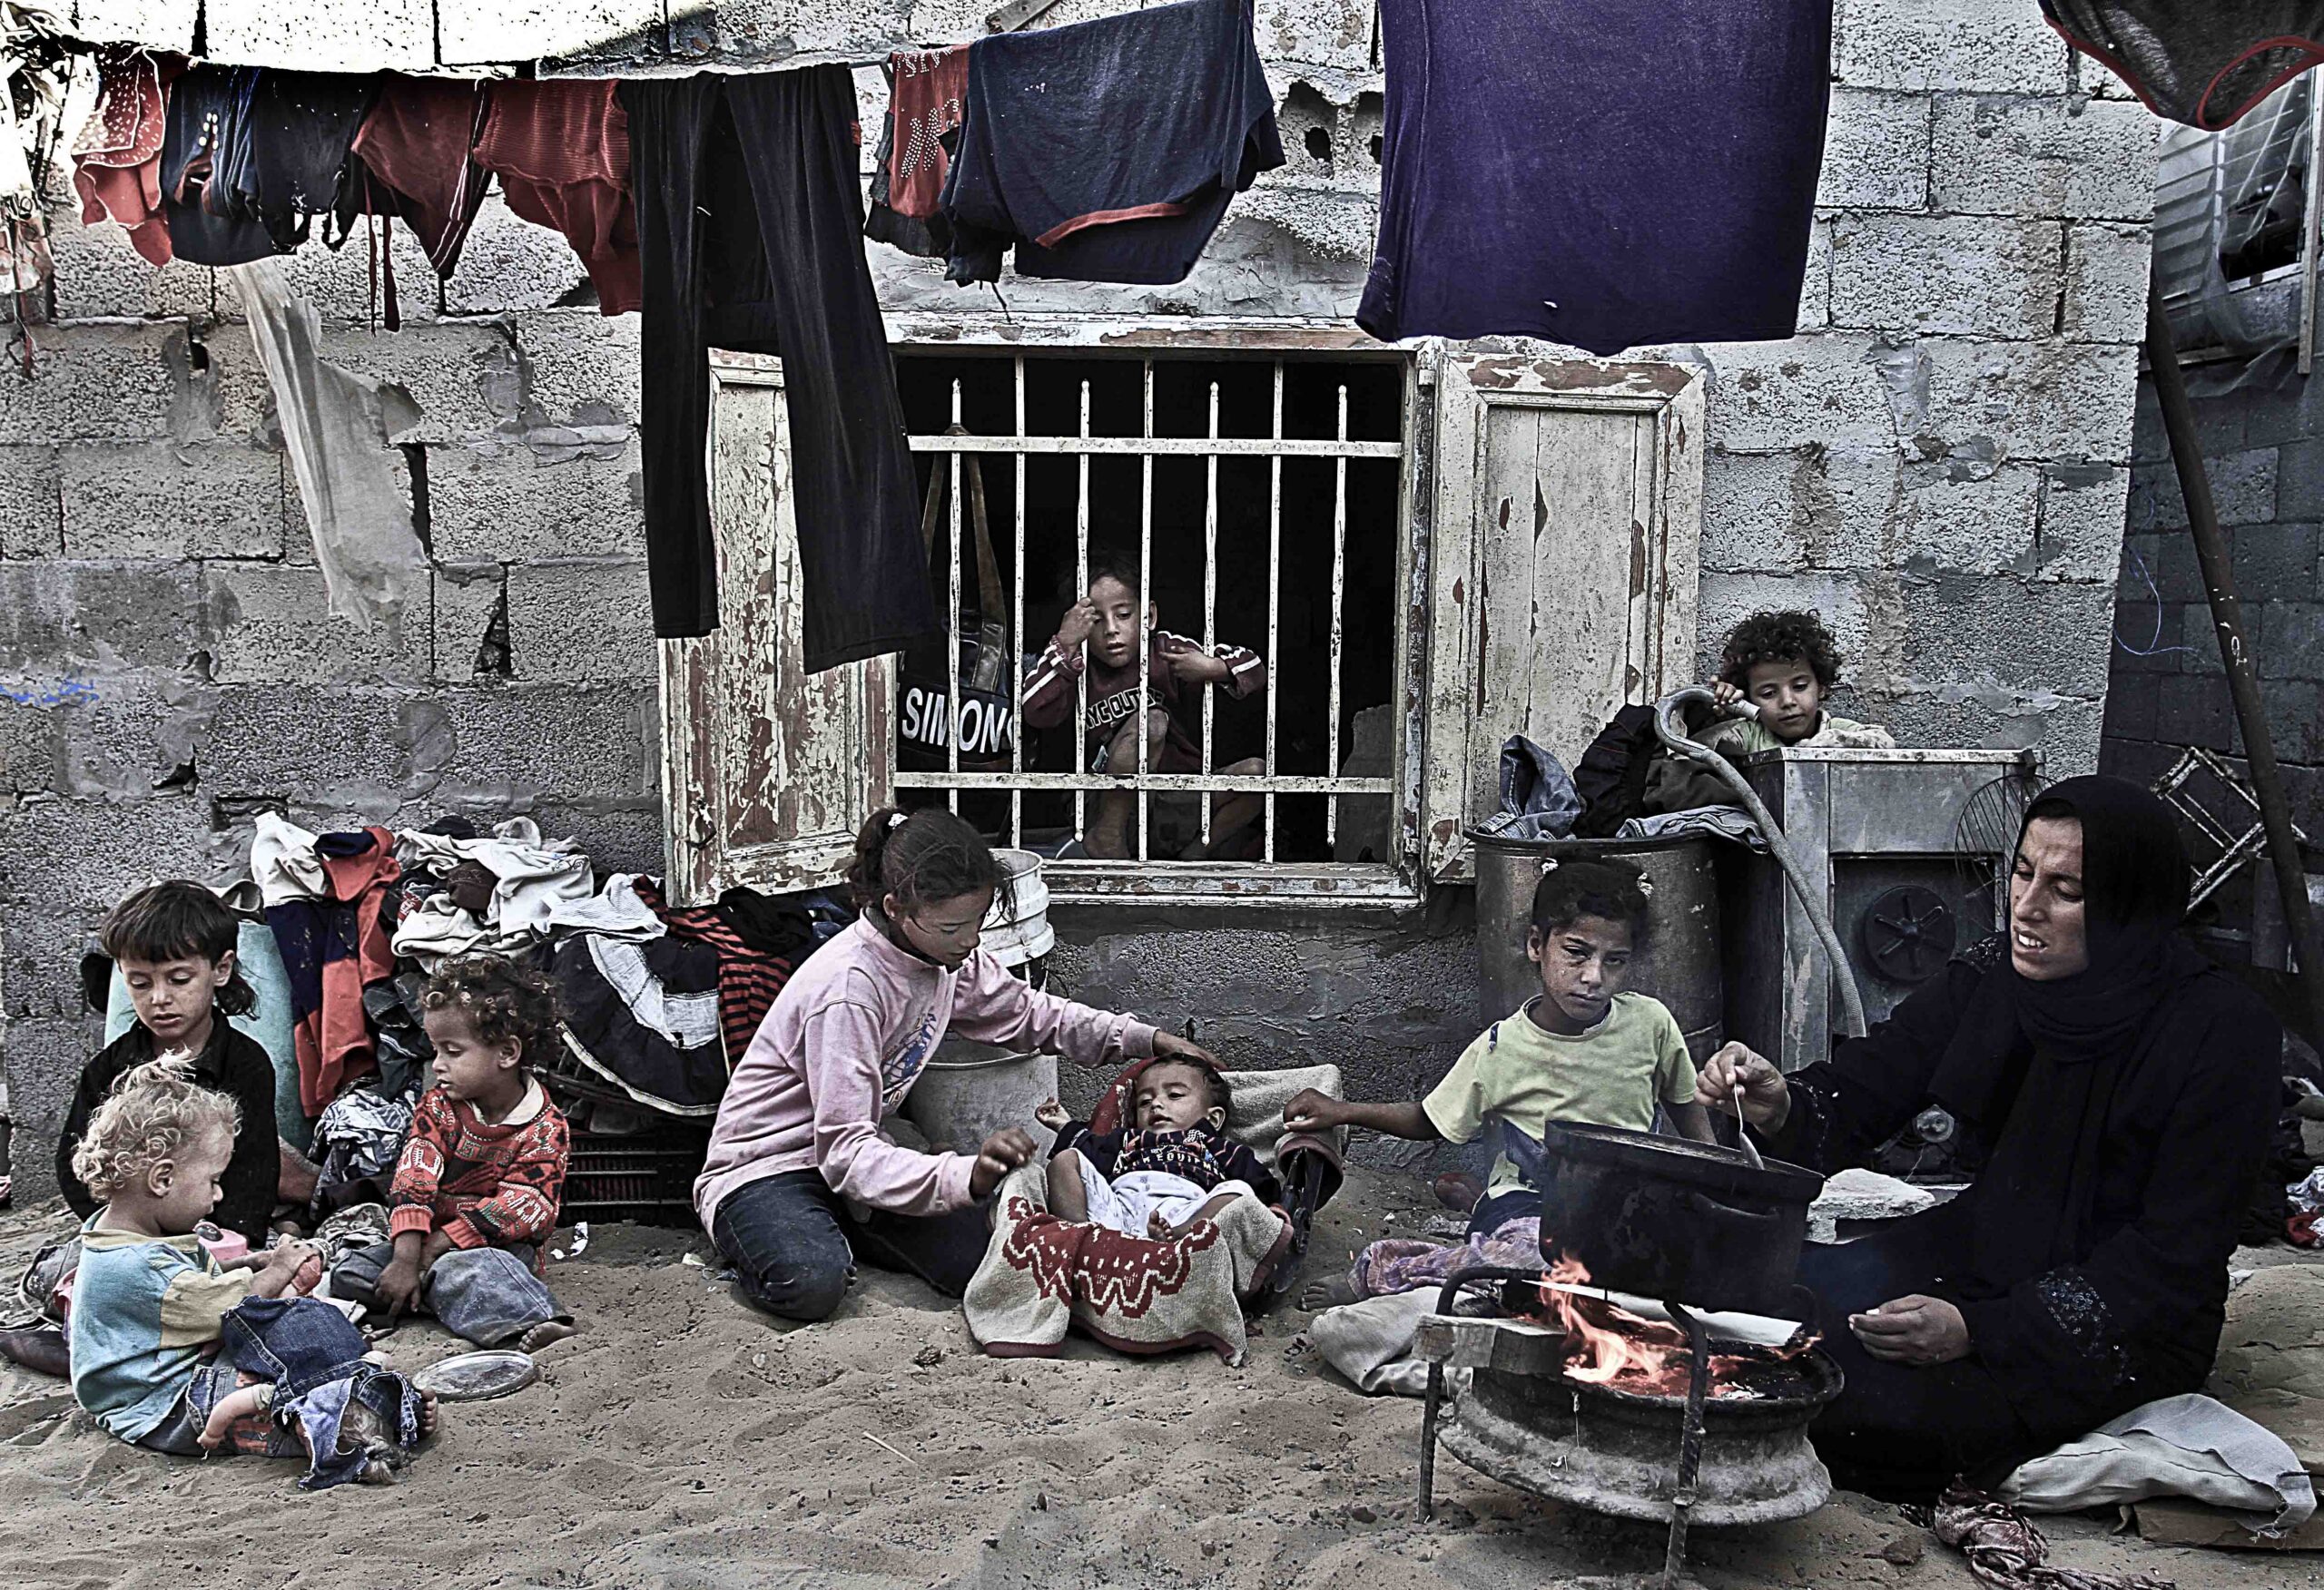 "غزة في خطر: الحصار يهدد المخزون الغذائي وسبل الحياة"